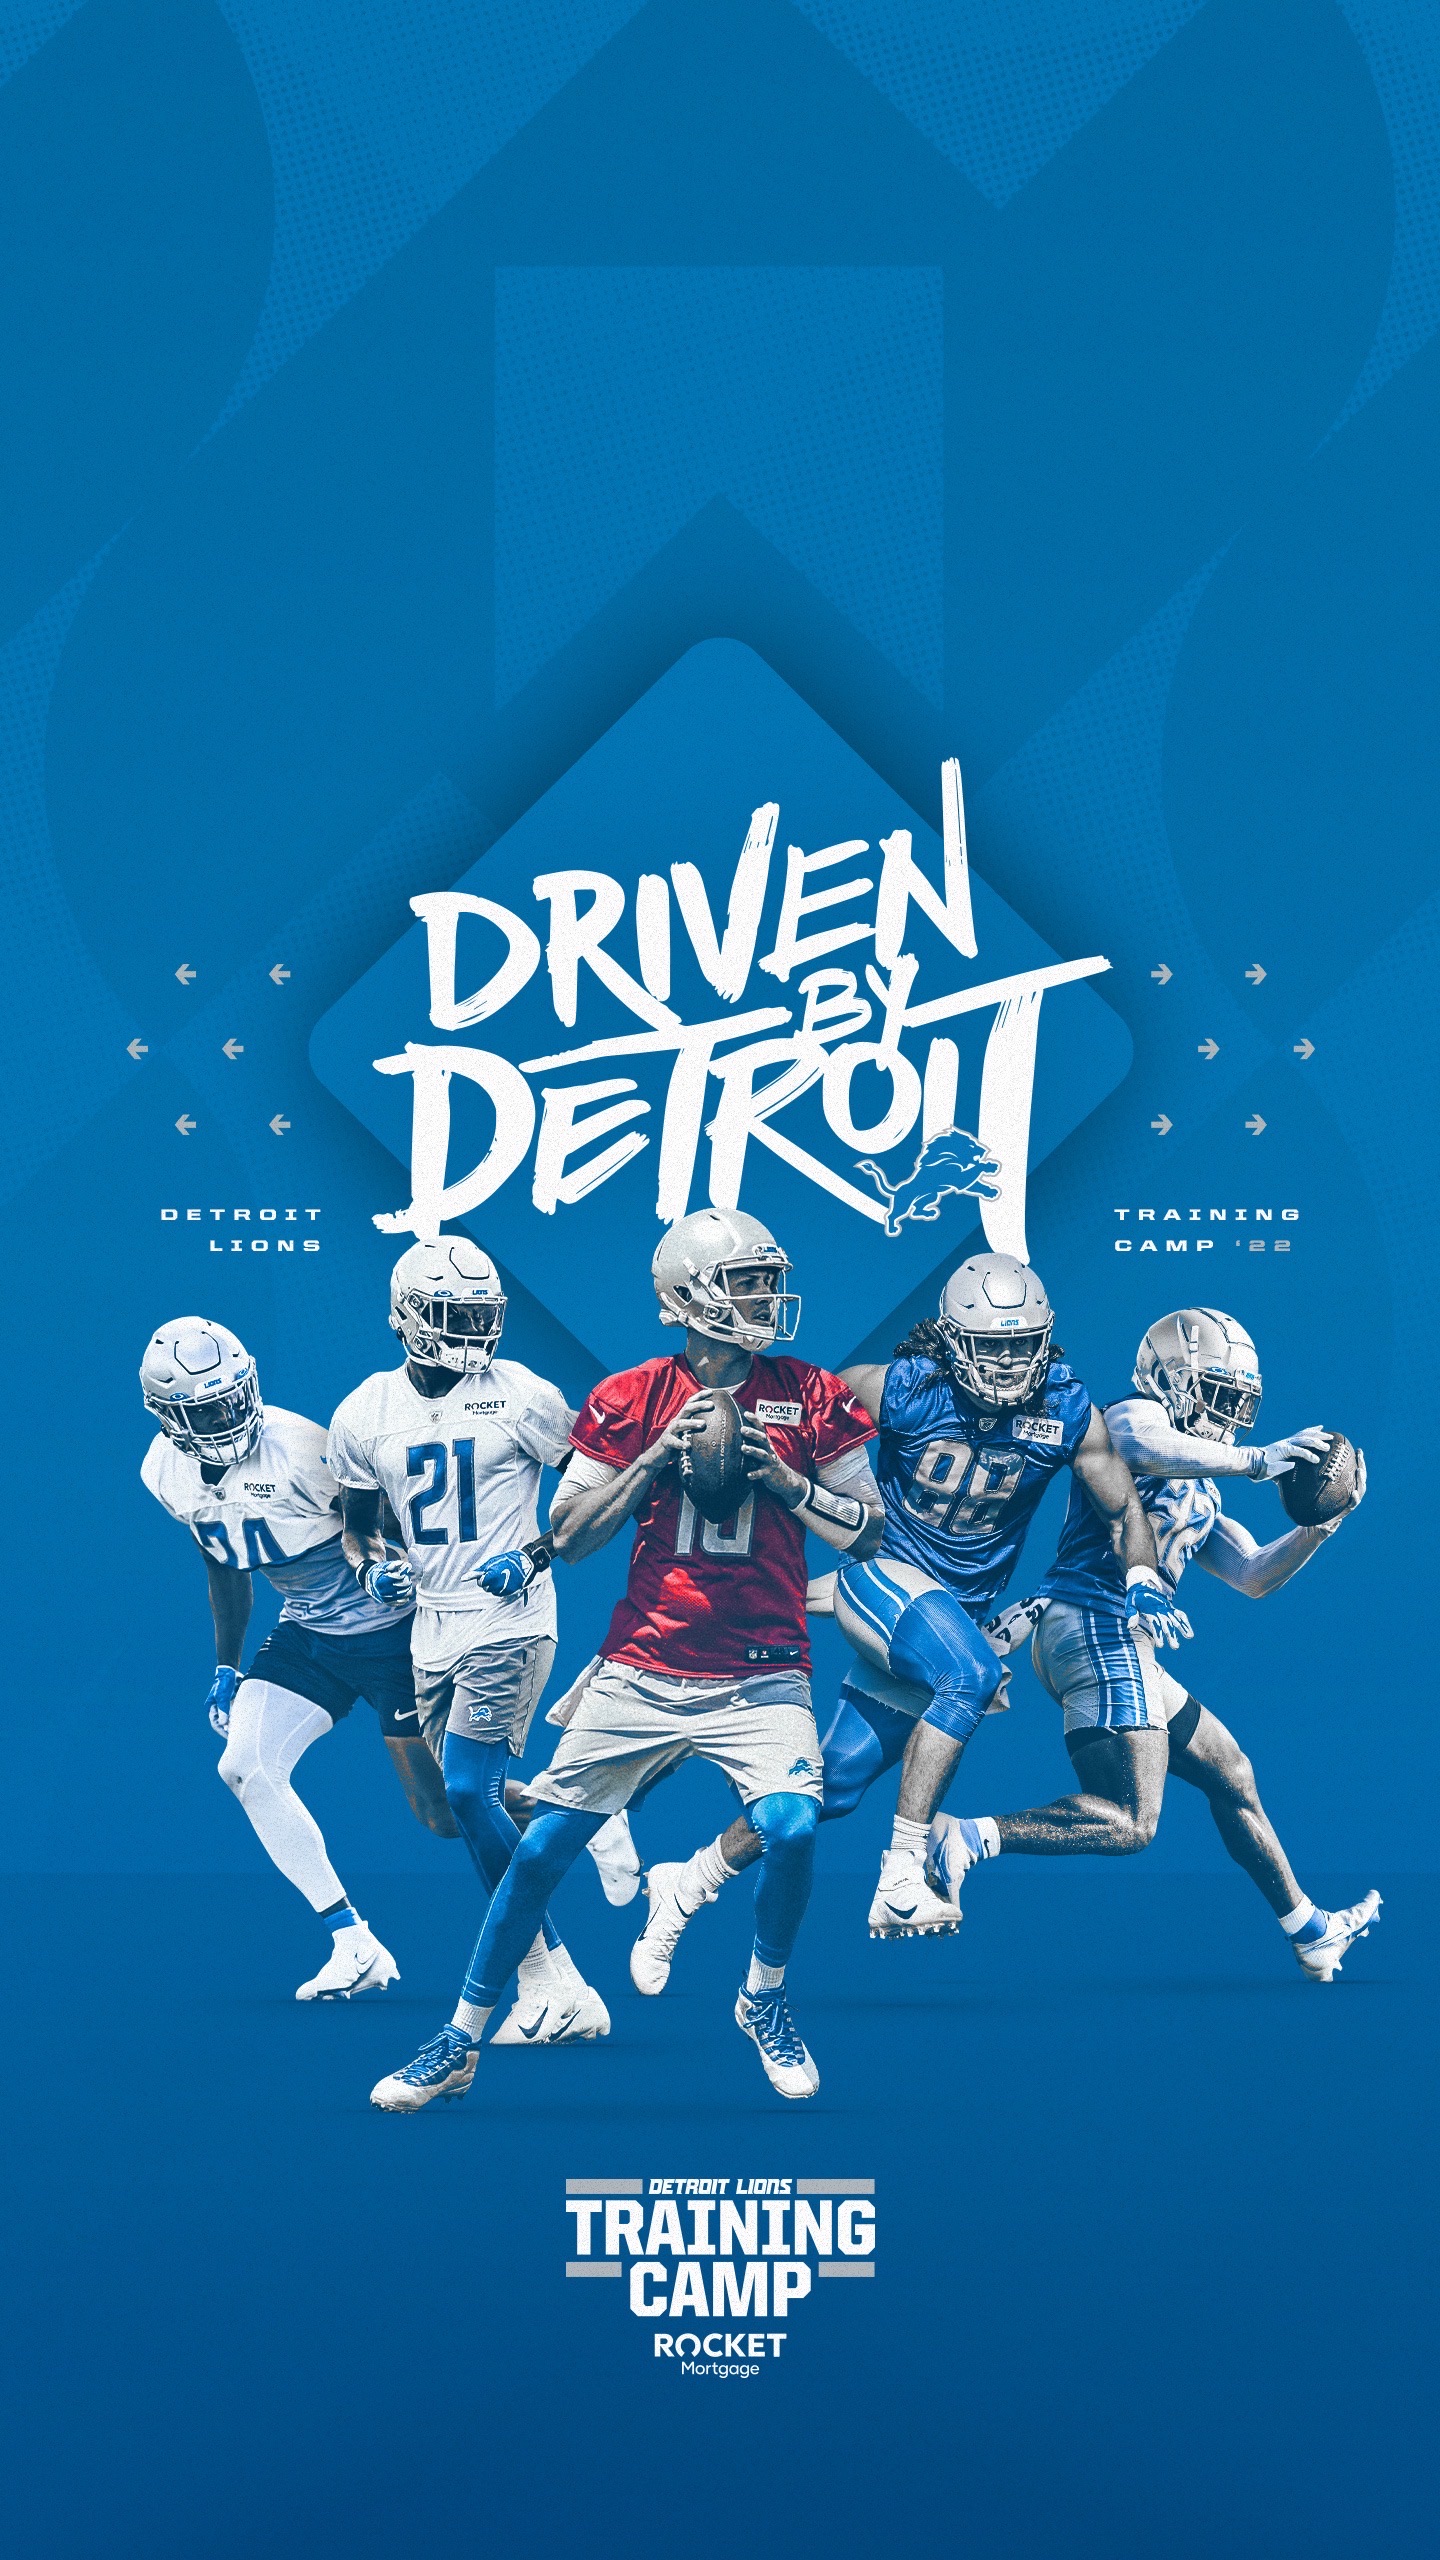 Detroit Lions Wallpapers